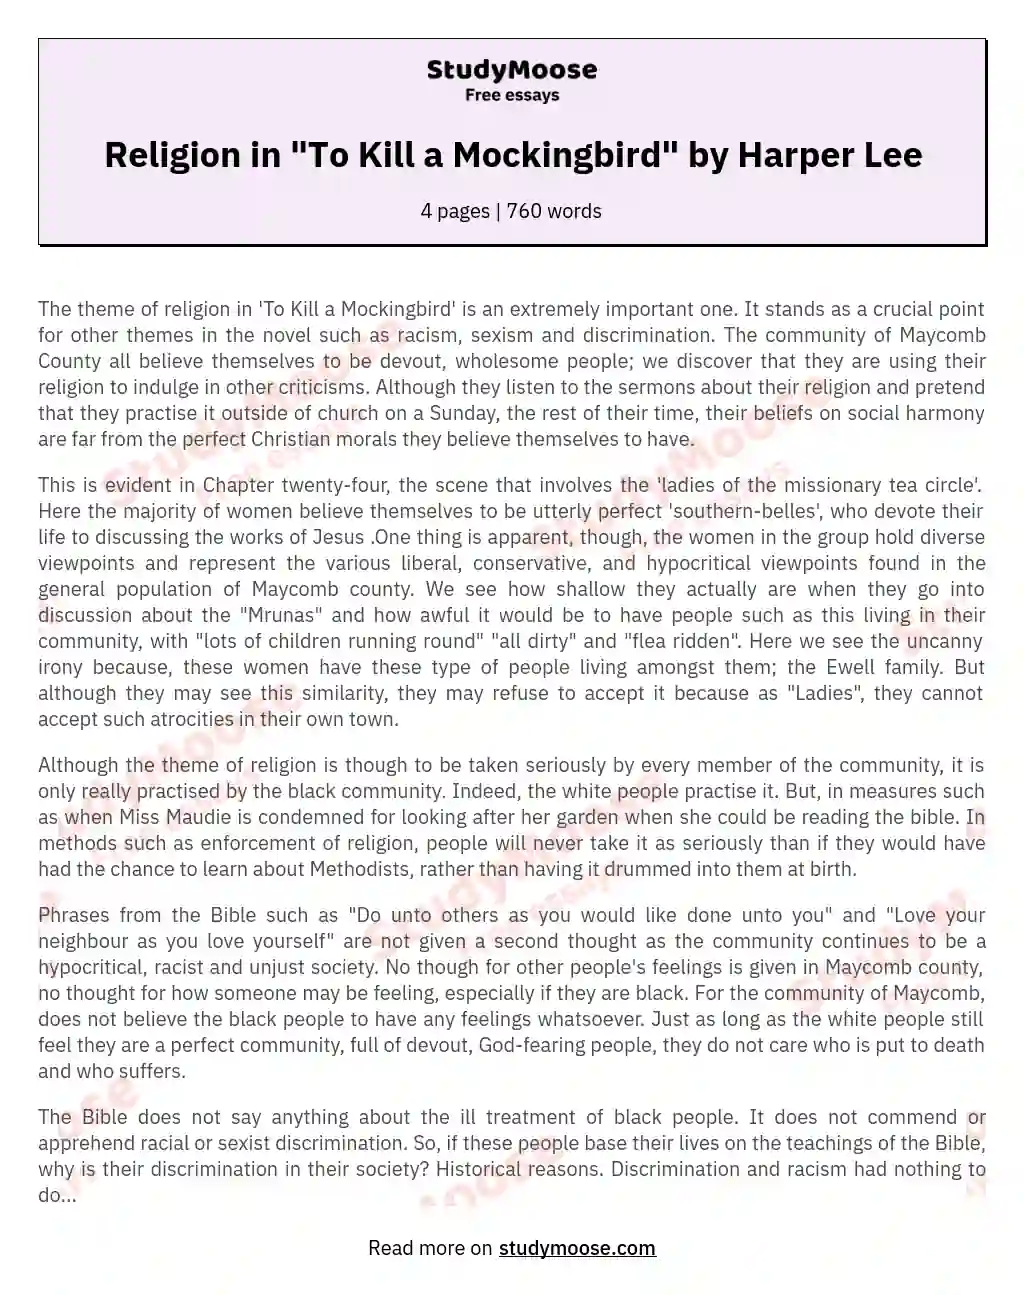 To Kill a Mockingbird: Religious Hypocrisy and Societal Dynamics essay